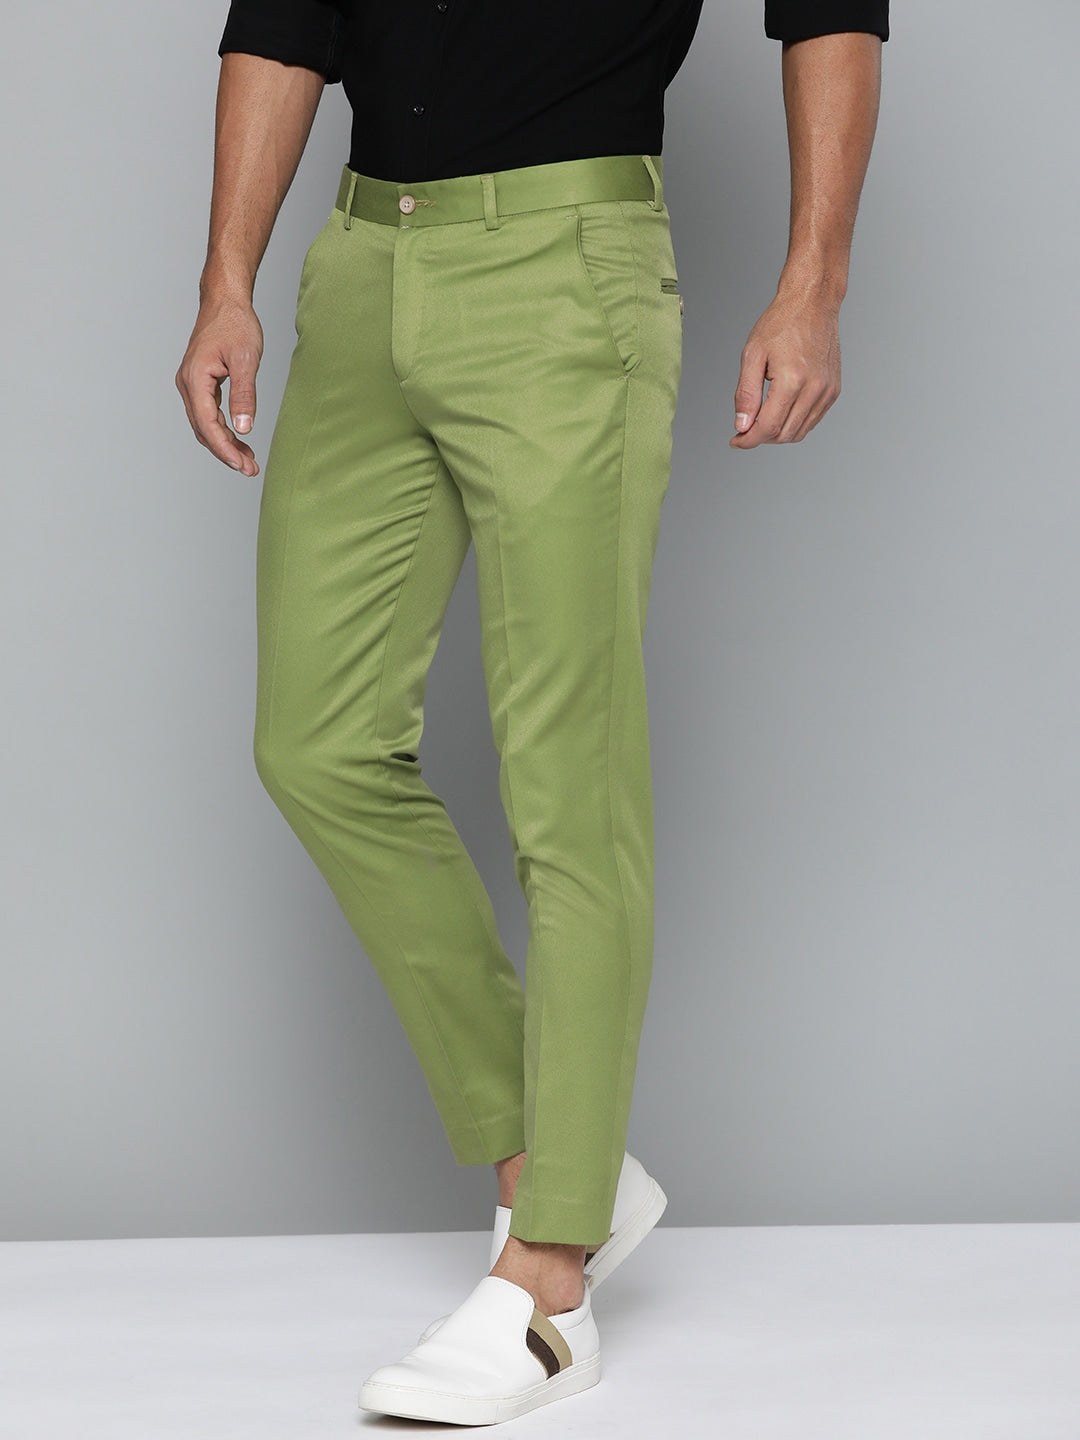 Luxe Formal Green Textured Shirt - Bolten